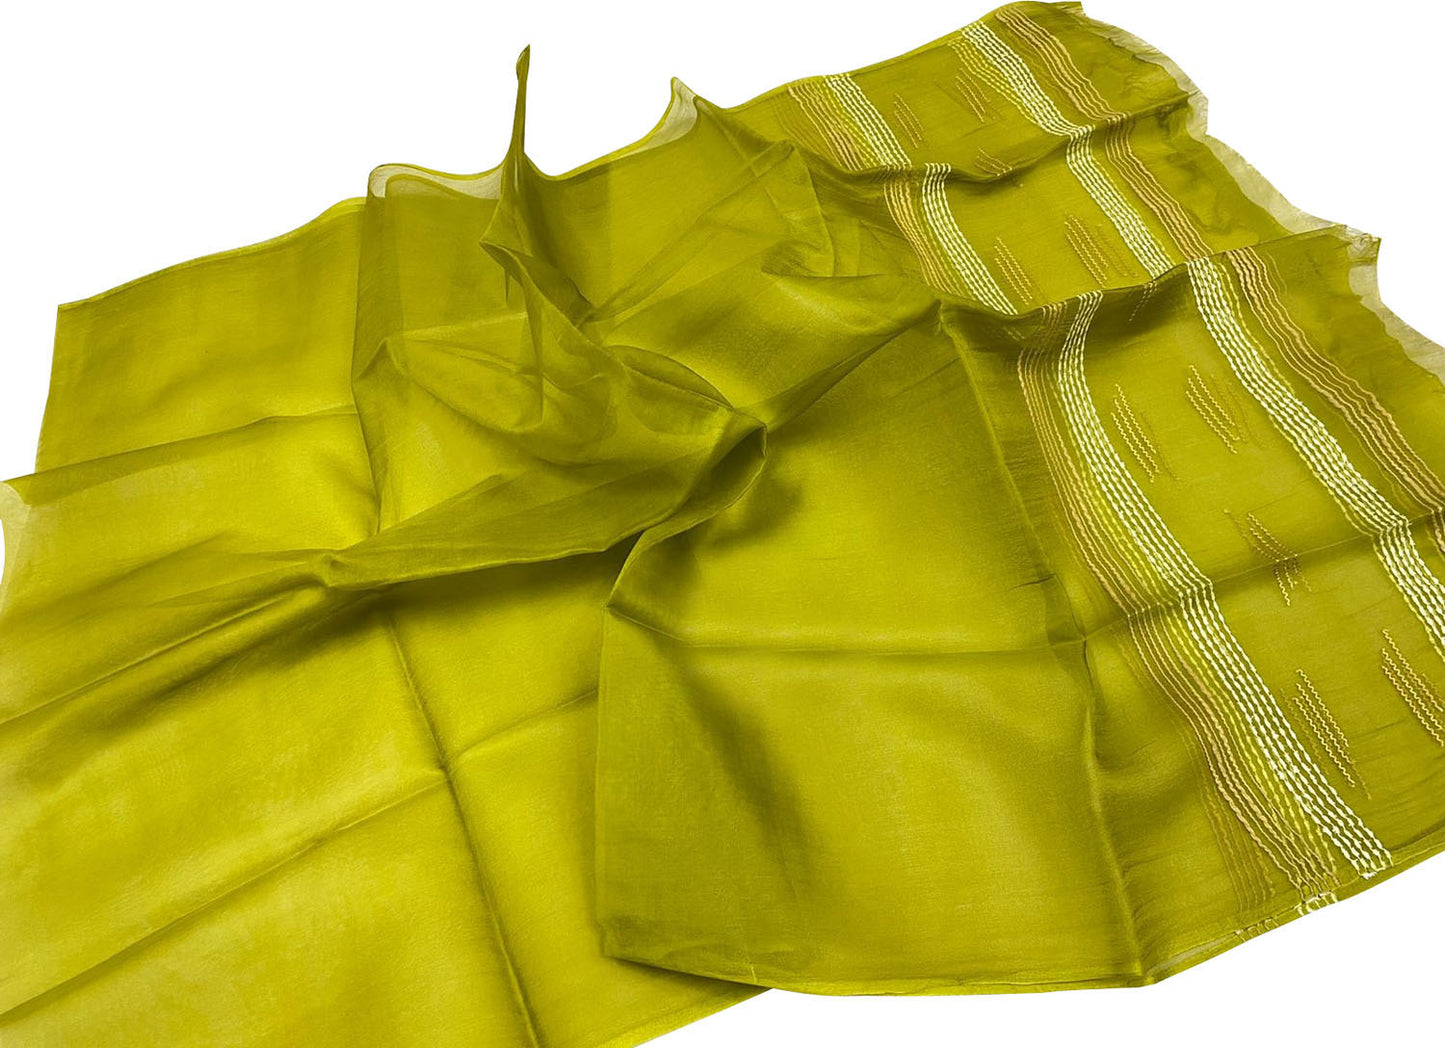 Get the Best Green Bhagalpur Tussar Silk Dupatta - Shop Now! - Luxurion World